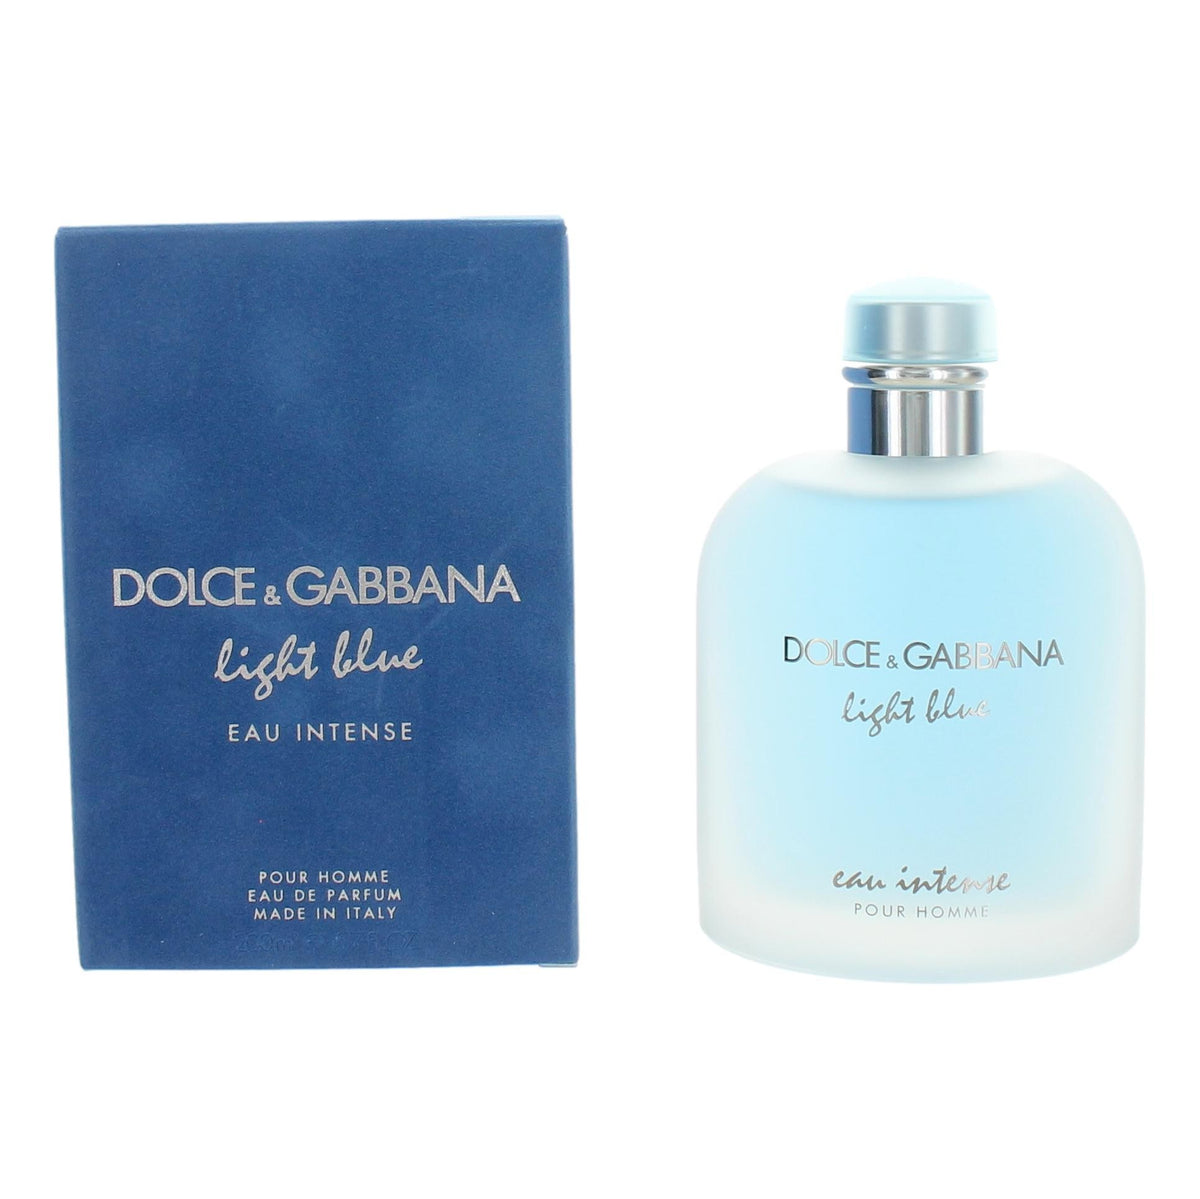 Light Blue Eau Intense by Dolce & Gabbana, 6.7 oz Eau De Parfum Spray for Men